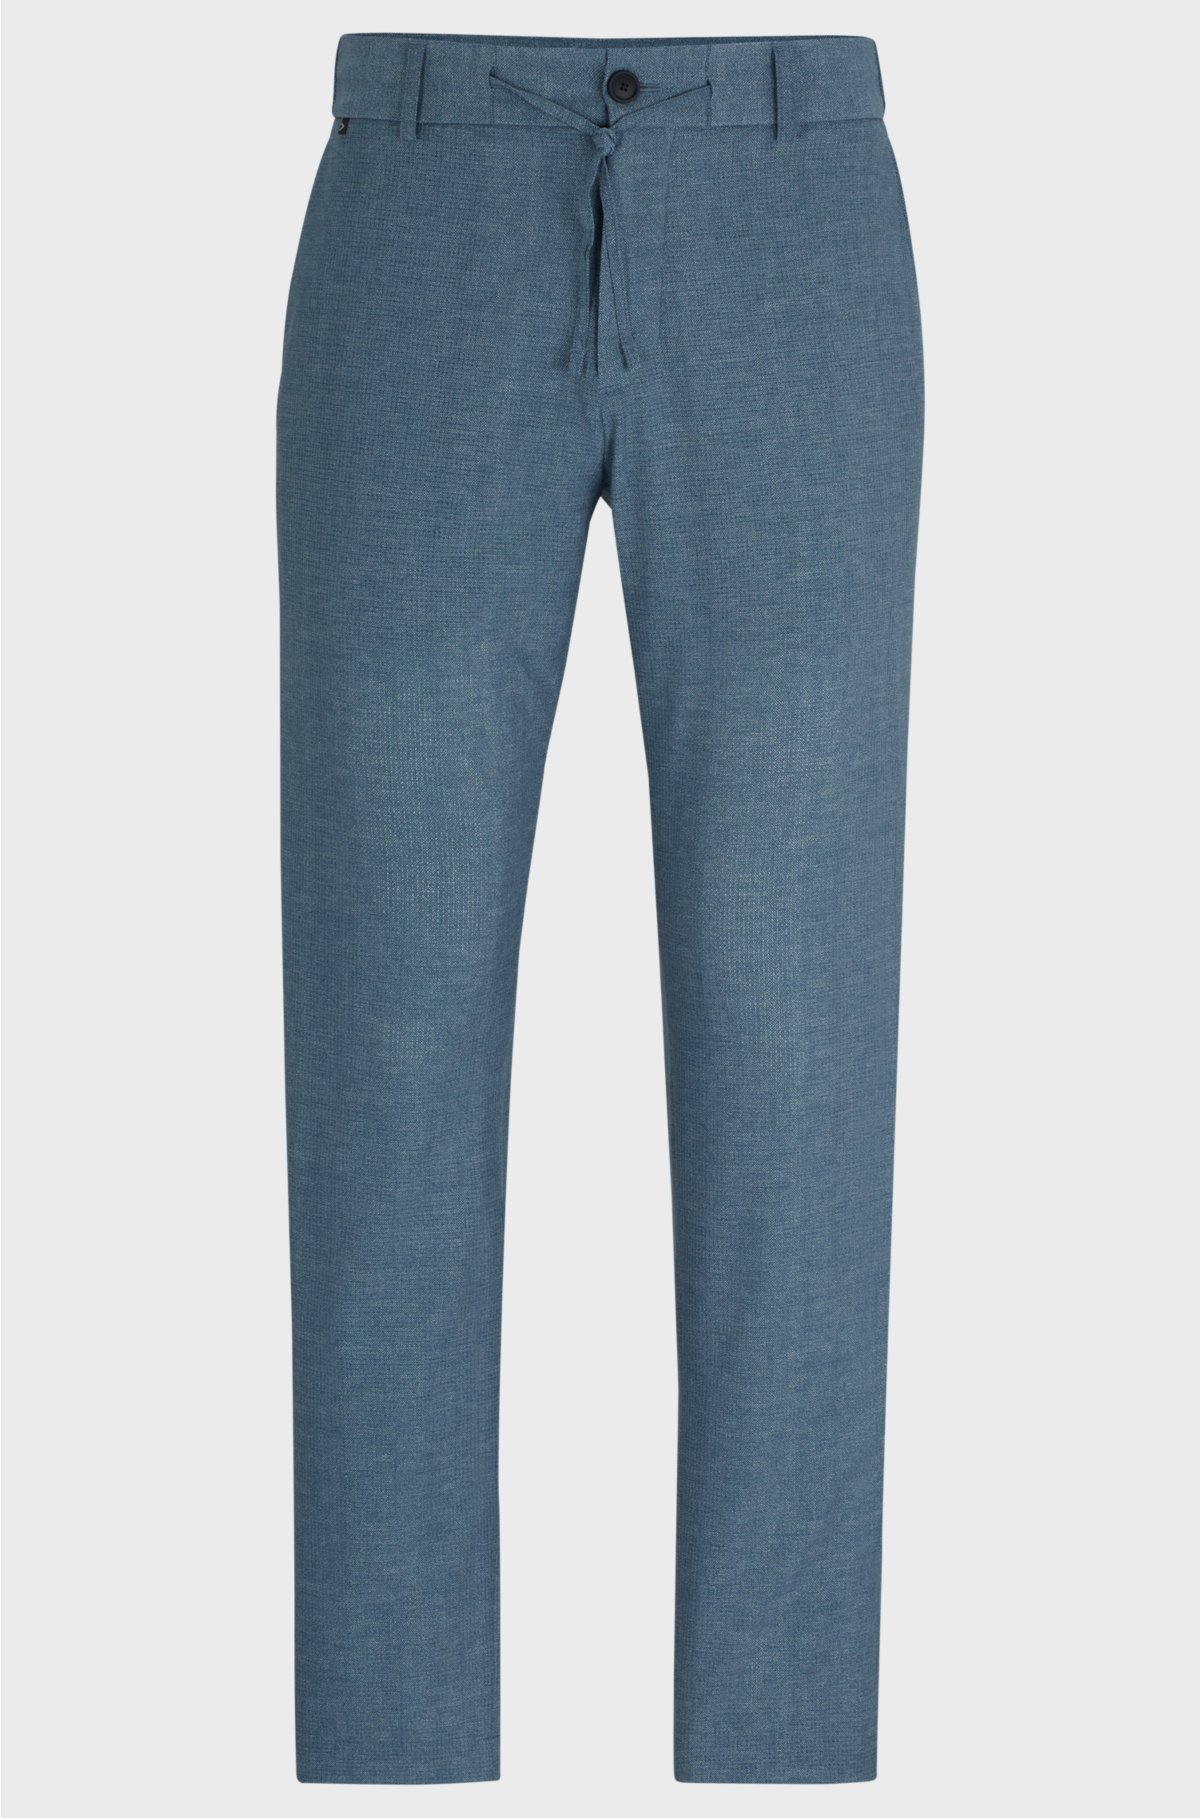 Slim-fit trousers in wrinkle-resistant mesh, Blue